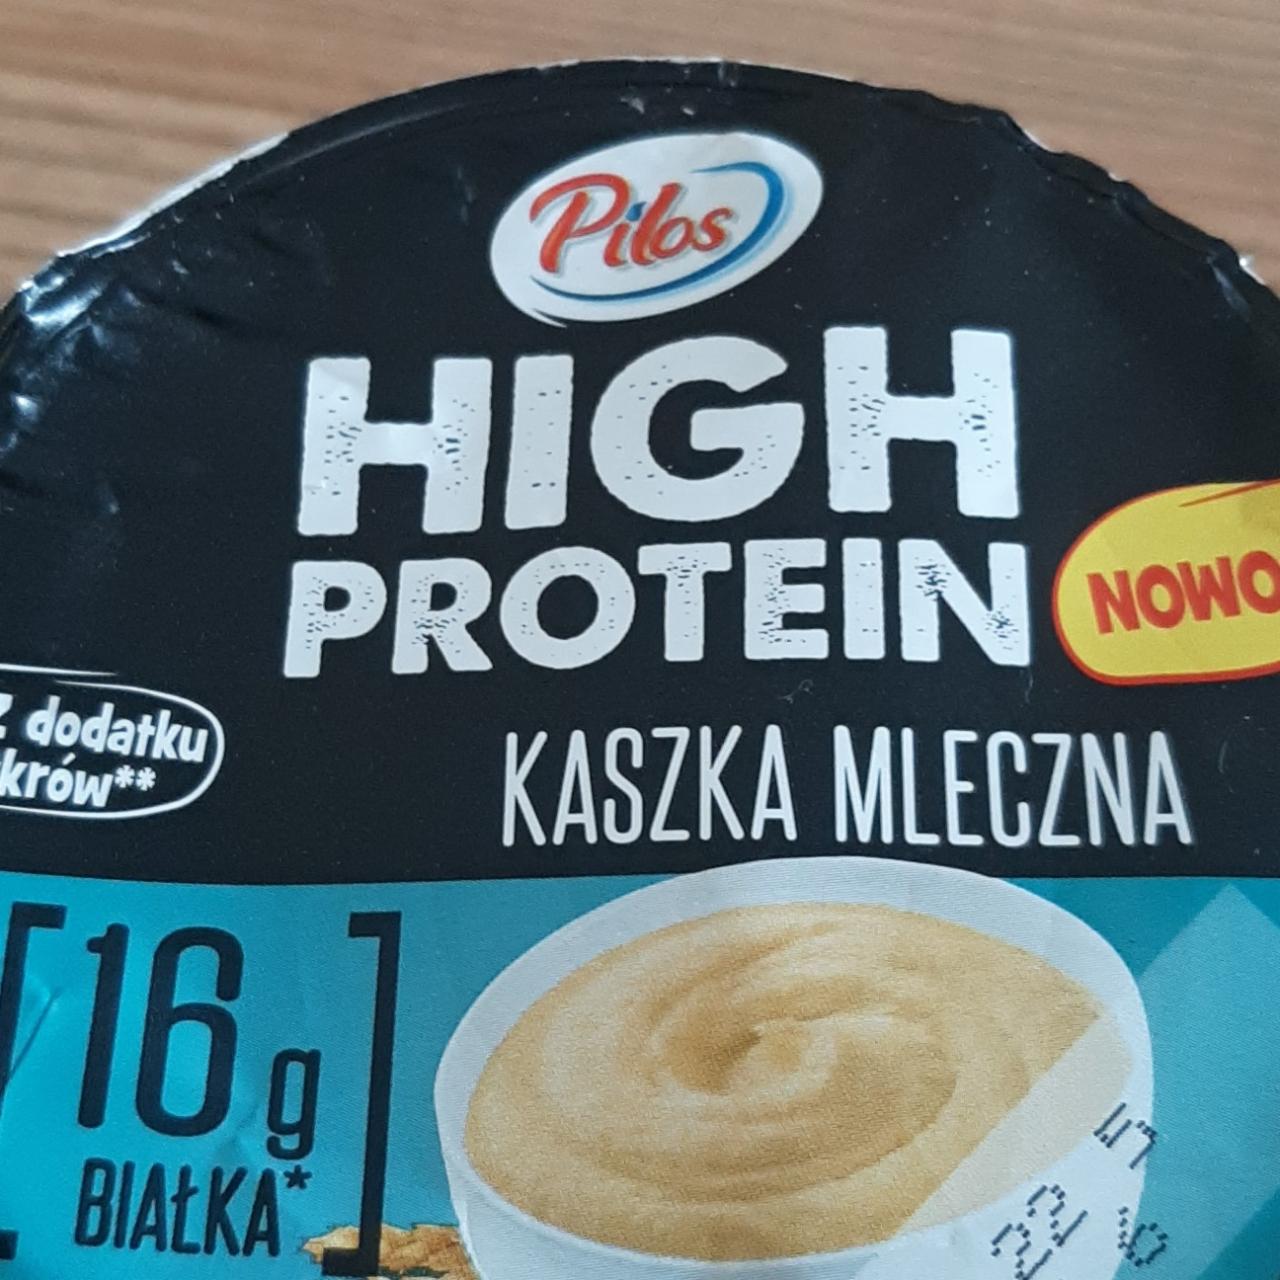 Zdjęcia - High protein kaszka mleczna Pilos